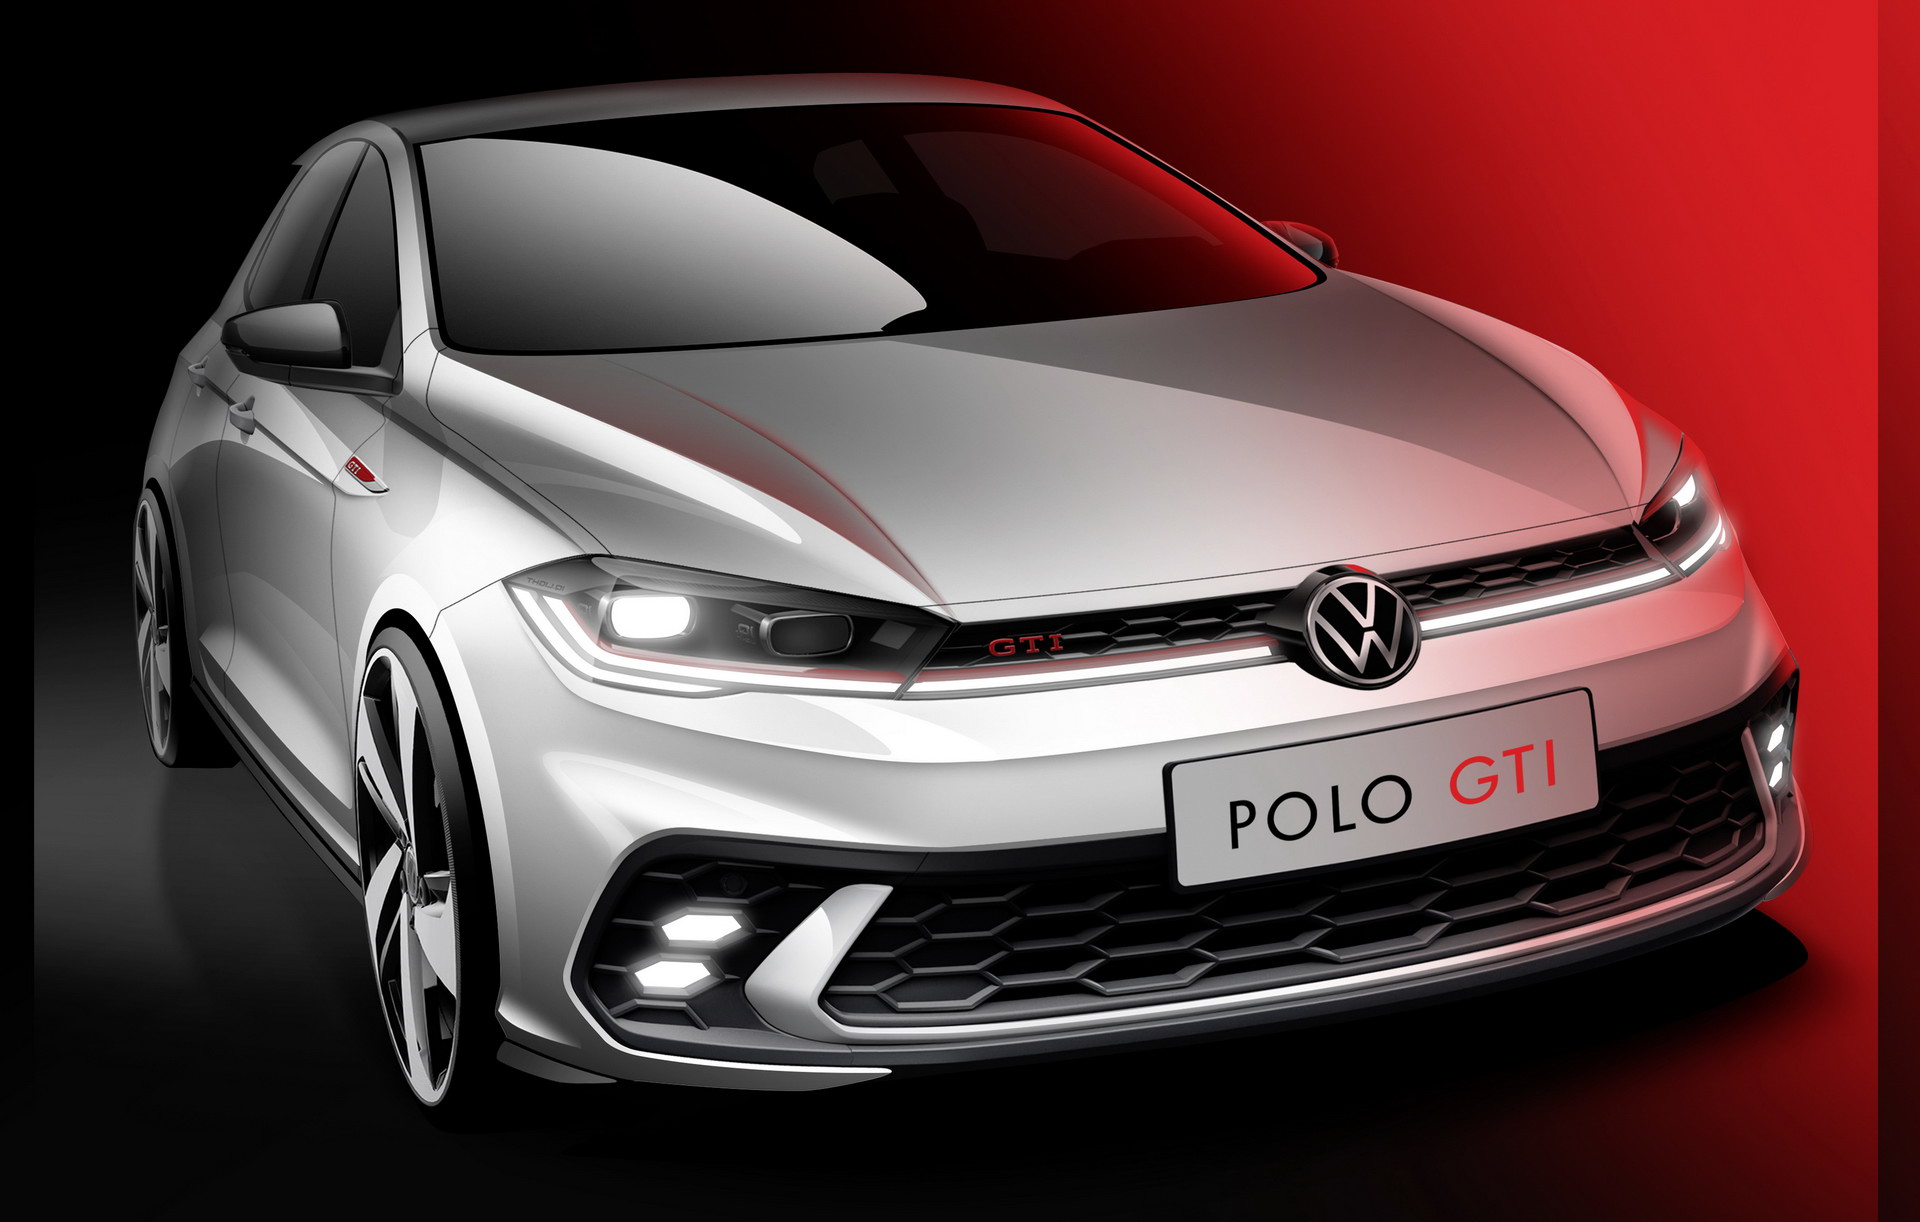 Nowy VW Polo GTI na szkicach